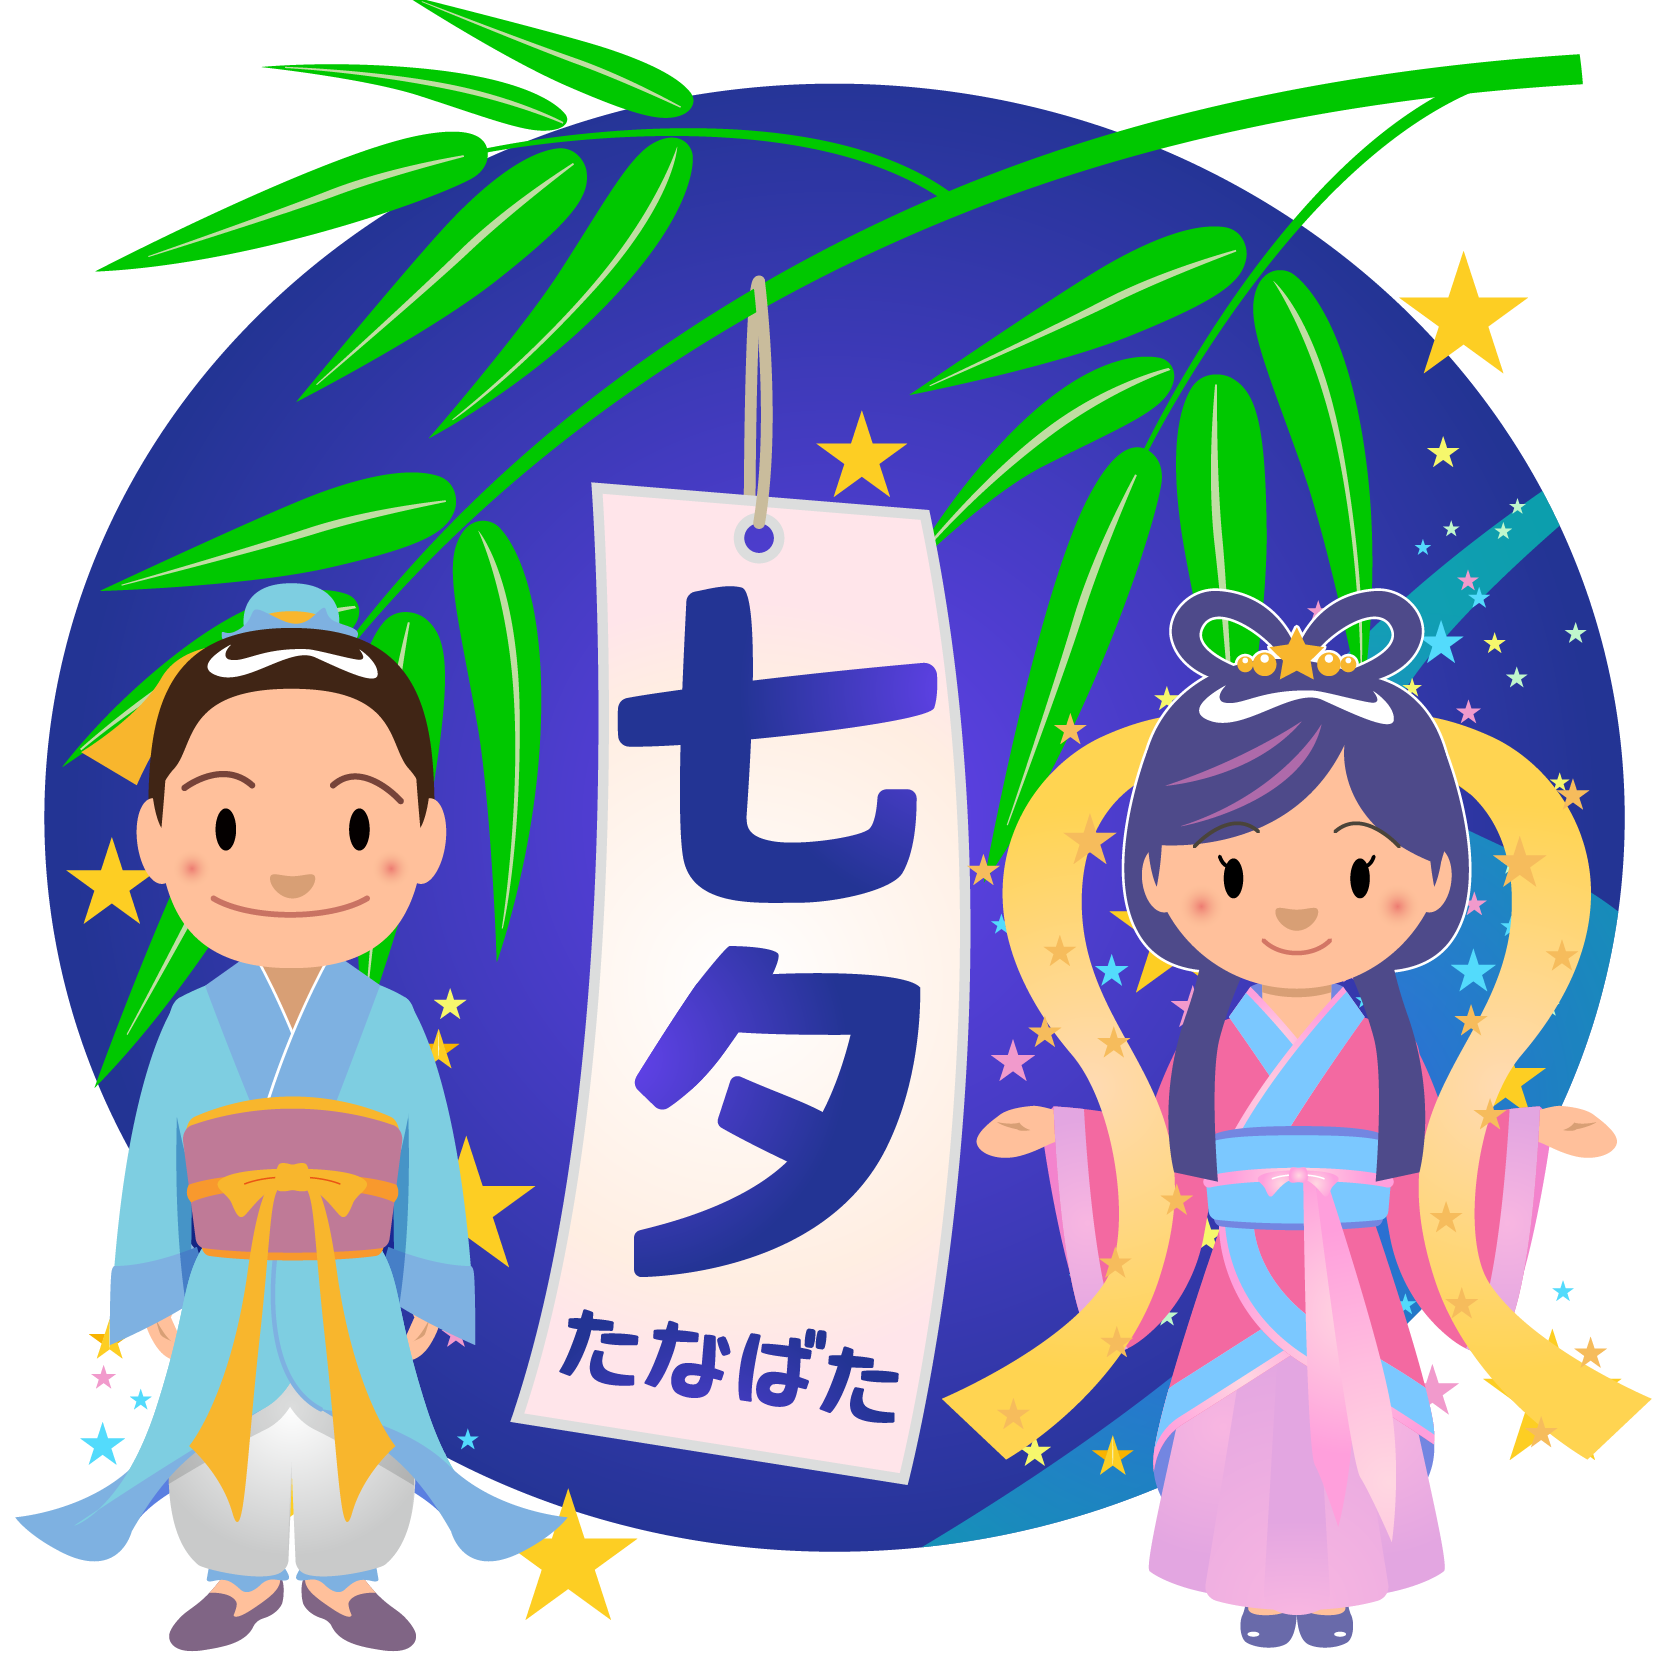 商用フリー 無料イラスト 七夕文字 織姫彦星 七月 July Tanabata052 商用ok フリー素材集 ナイスなイラスト